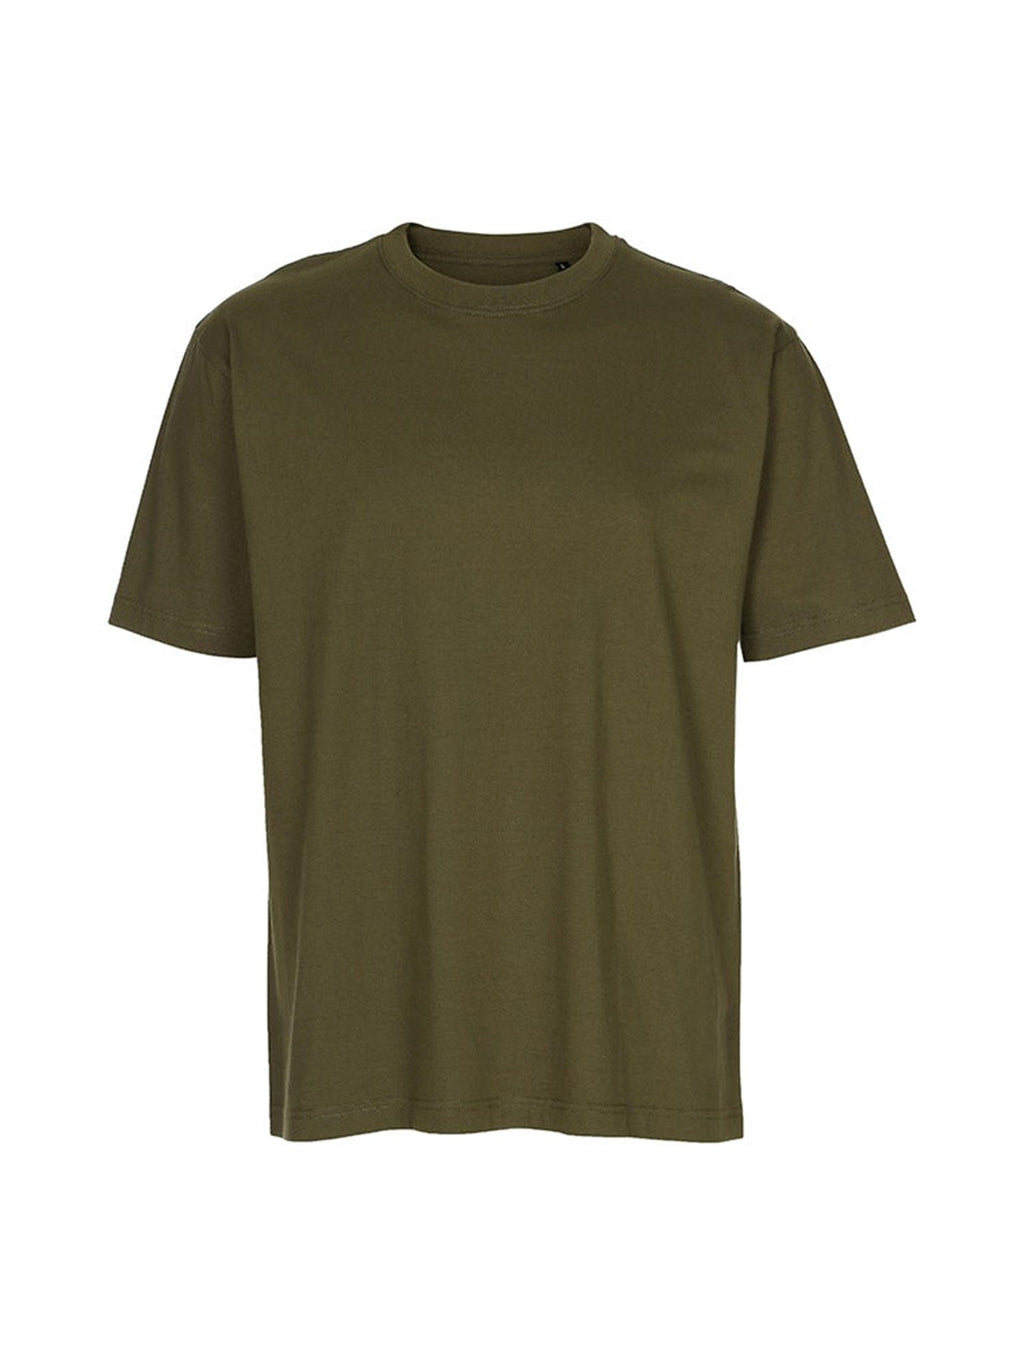 超大T恤 - 陆军绿色